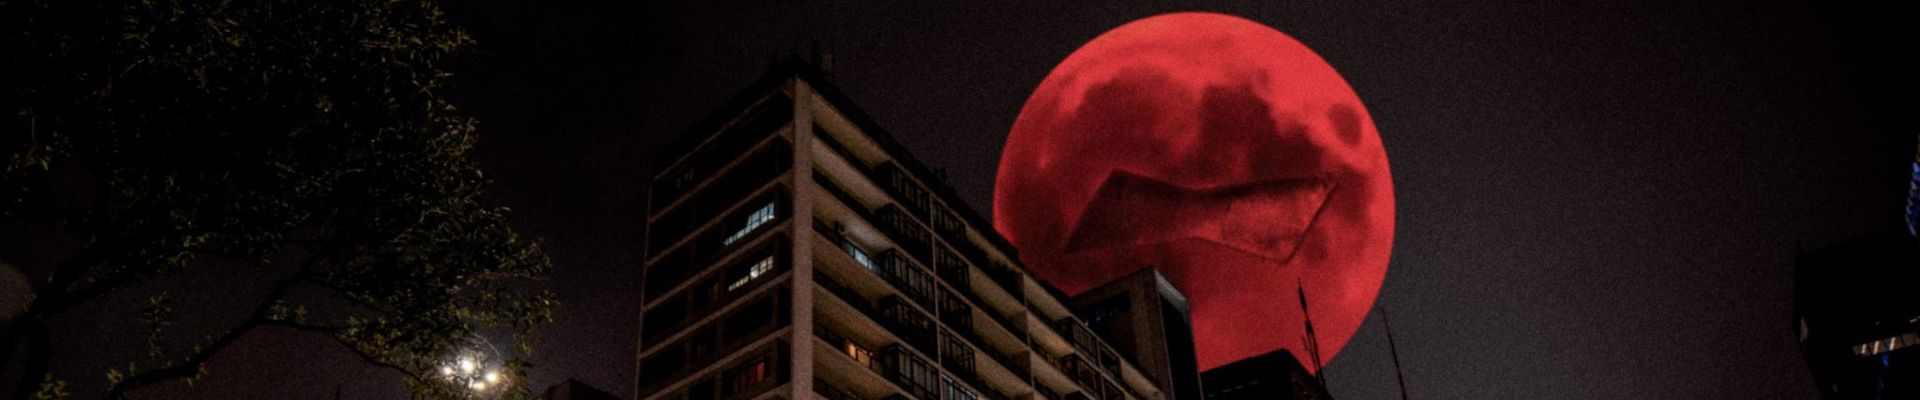 Budweiser sobe Super Lua vermelha inspirada no The Weeknd no céu de São Paulo